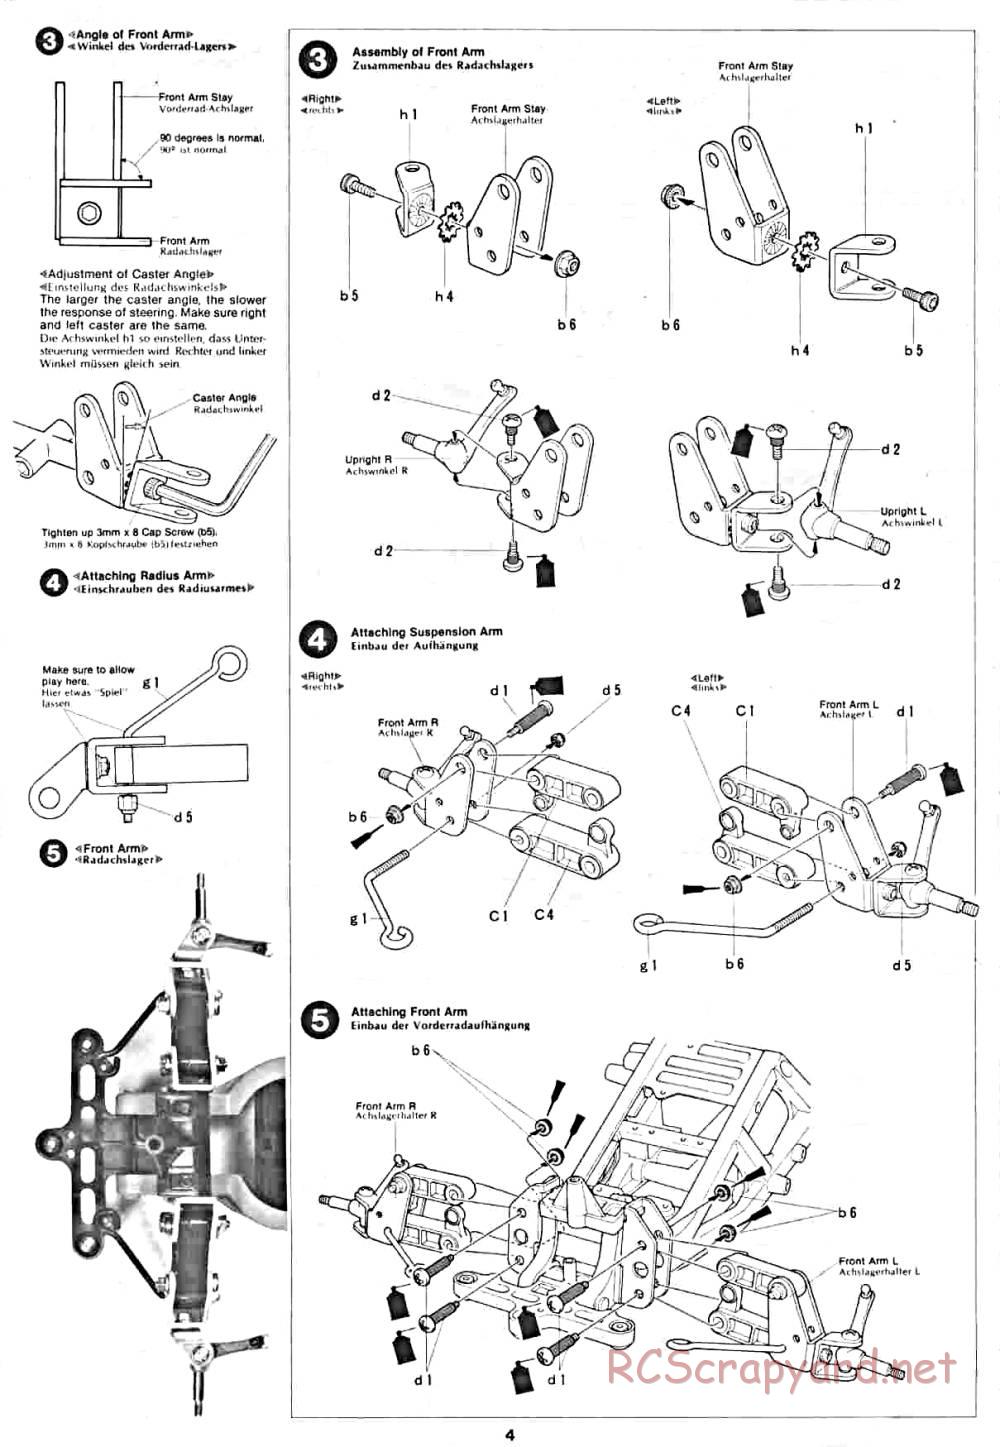 Tamiya - Lancia Rally - 58040 - Manual - Page 4